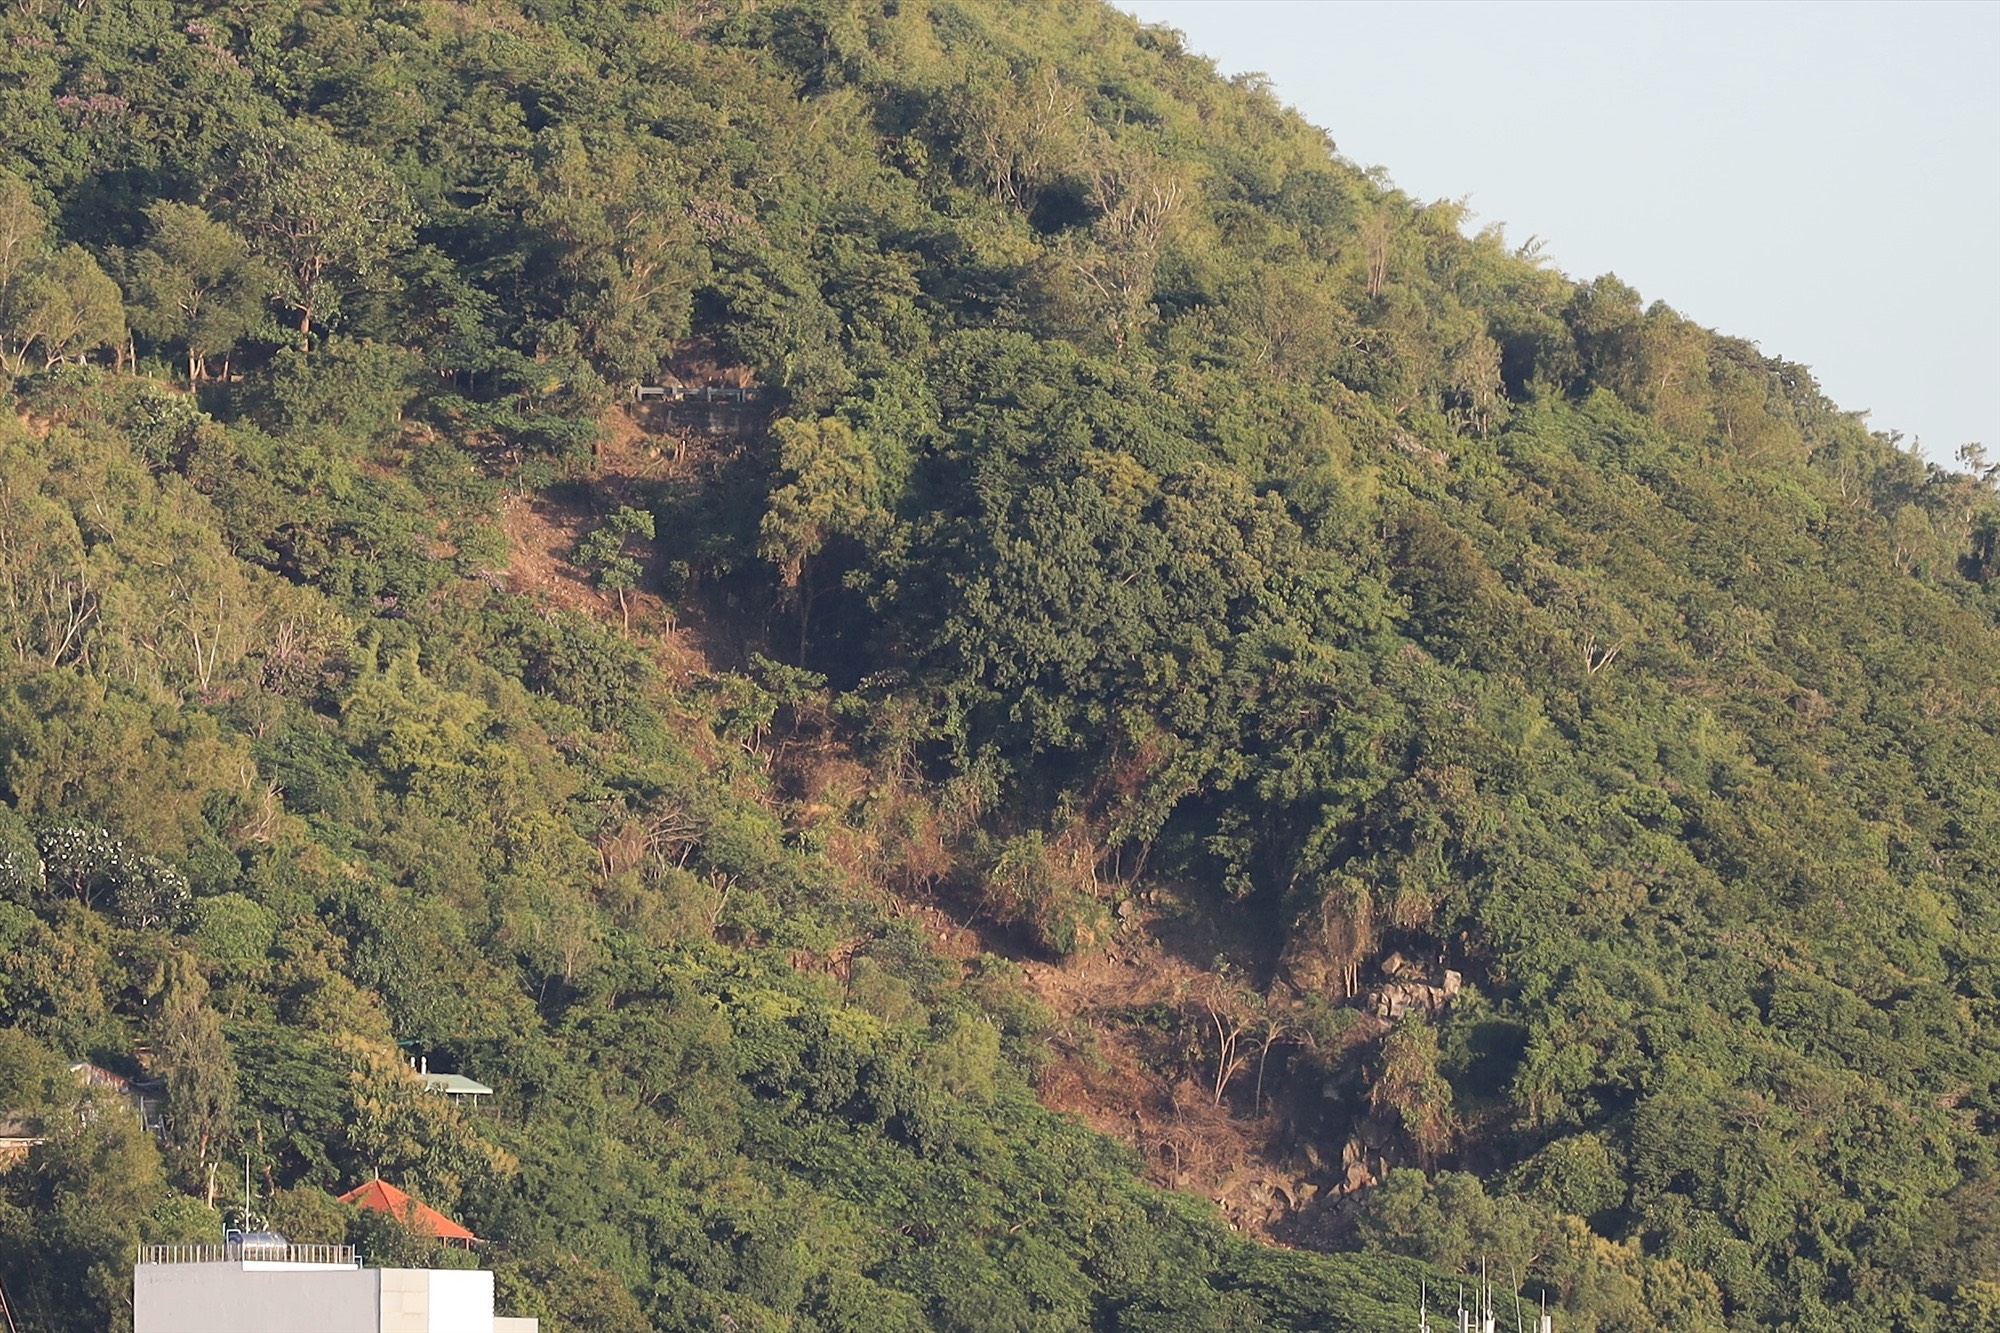 Làm rõ việc cấp sổ đỏ tại khu vực cây bị chặt hạ trên núi Nhỏ ở TP Vũng Tàu